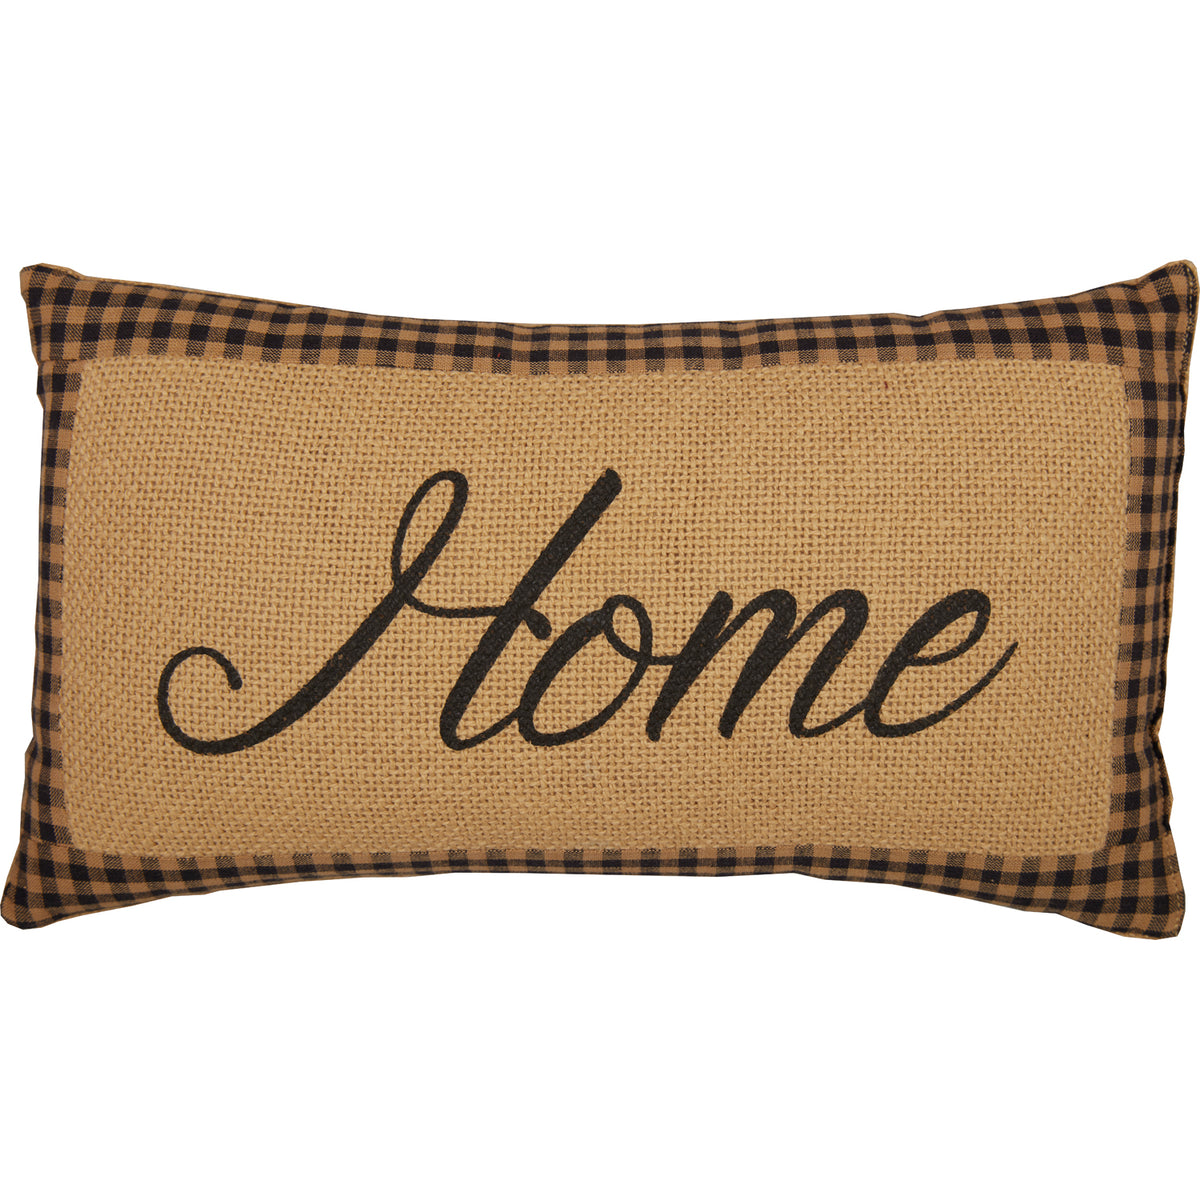 Farmhouse Star Home Pillow 7x13